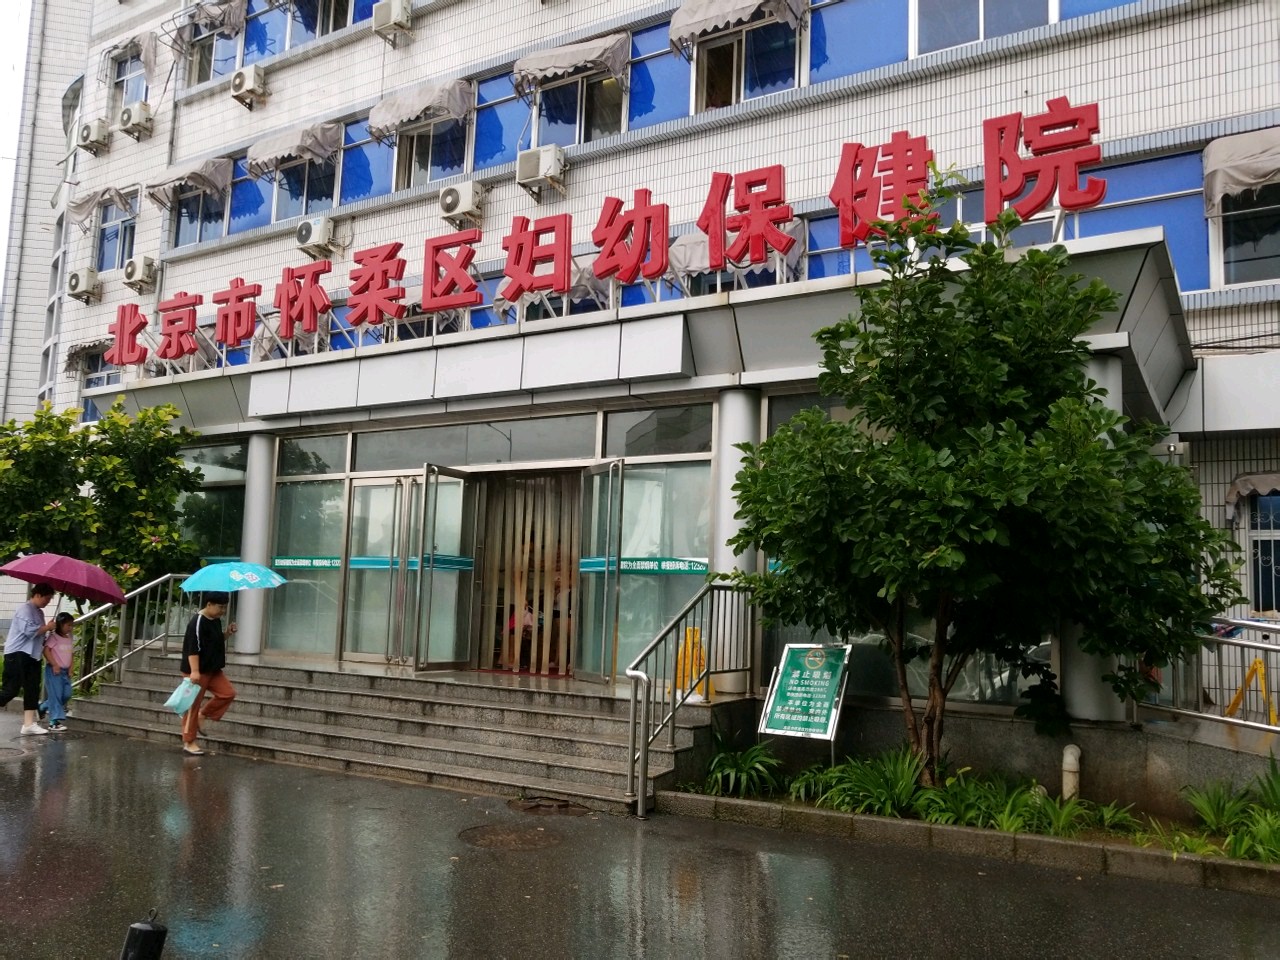 包含北京市海淀妇幼保健院去北京看病指南必知的词条